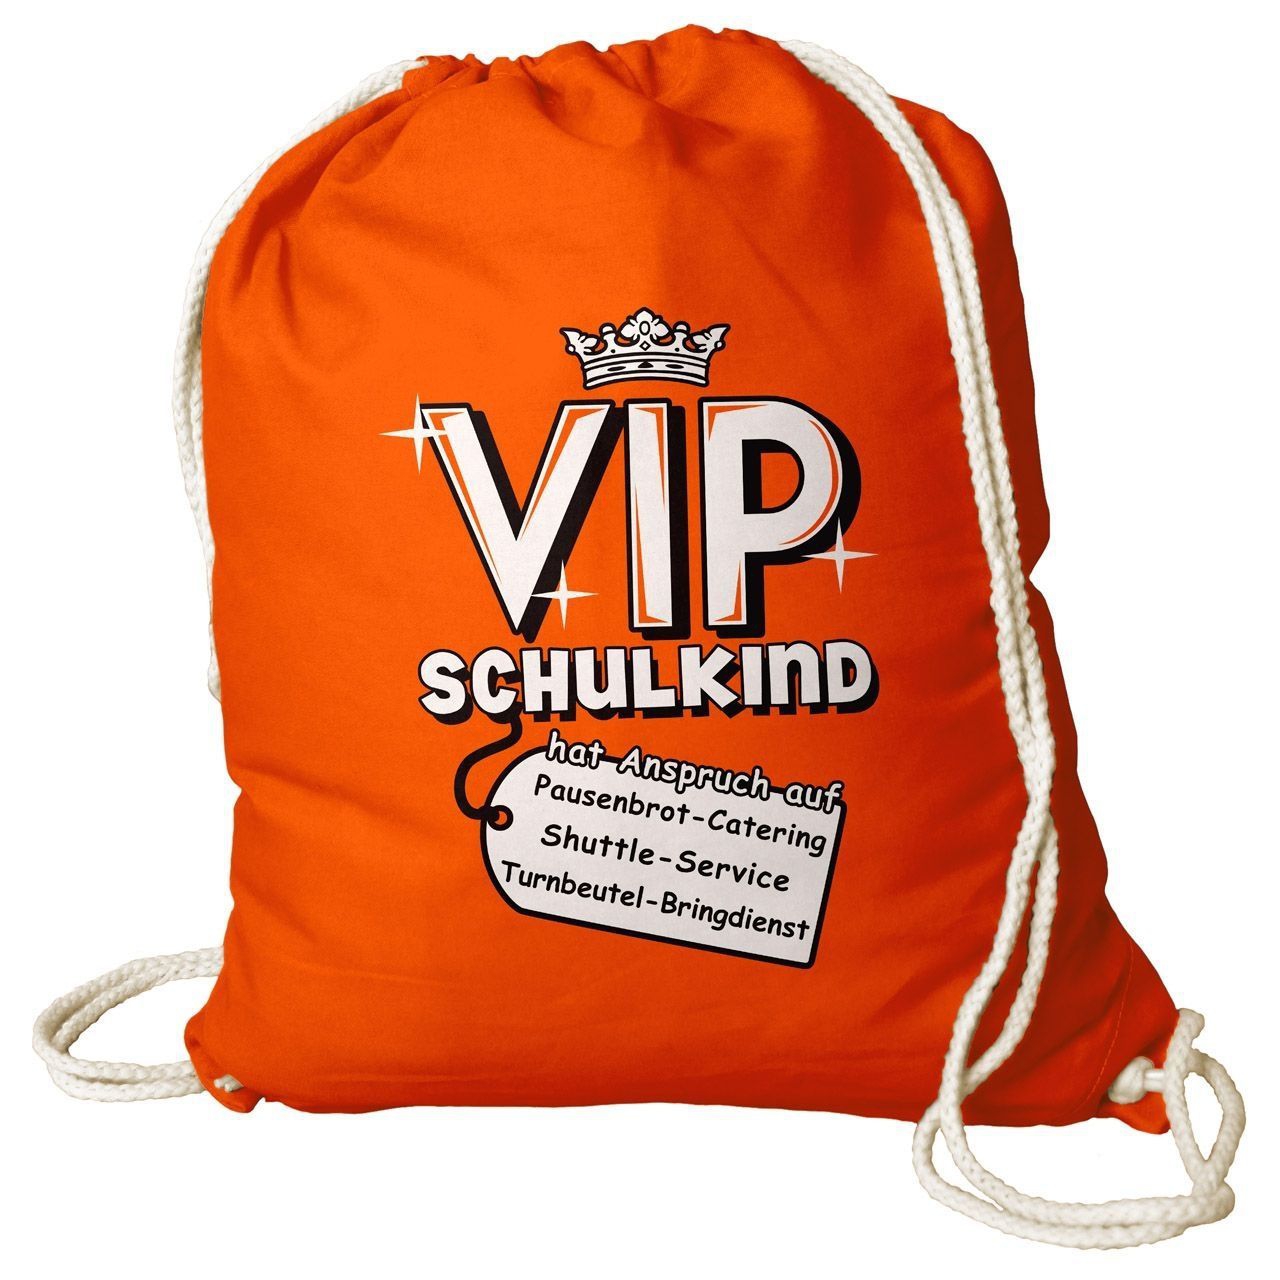 VIP Schulkind Rucksack Beutel orange